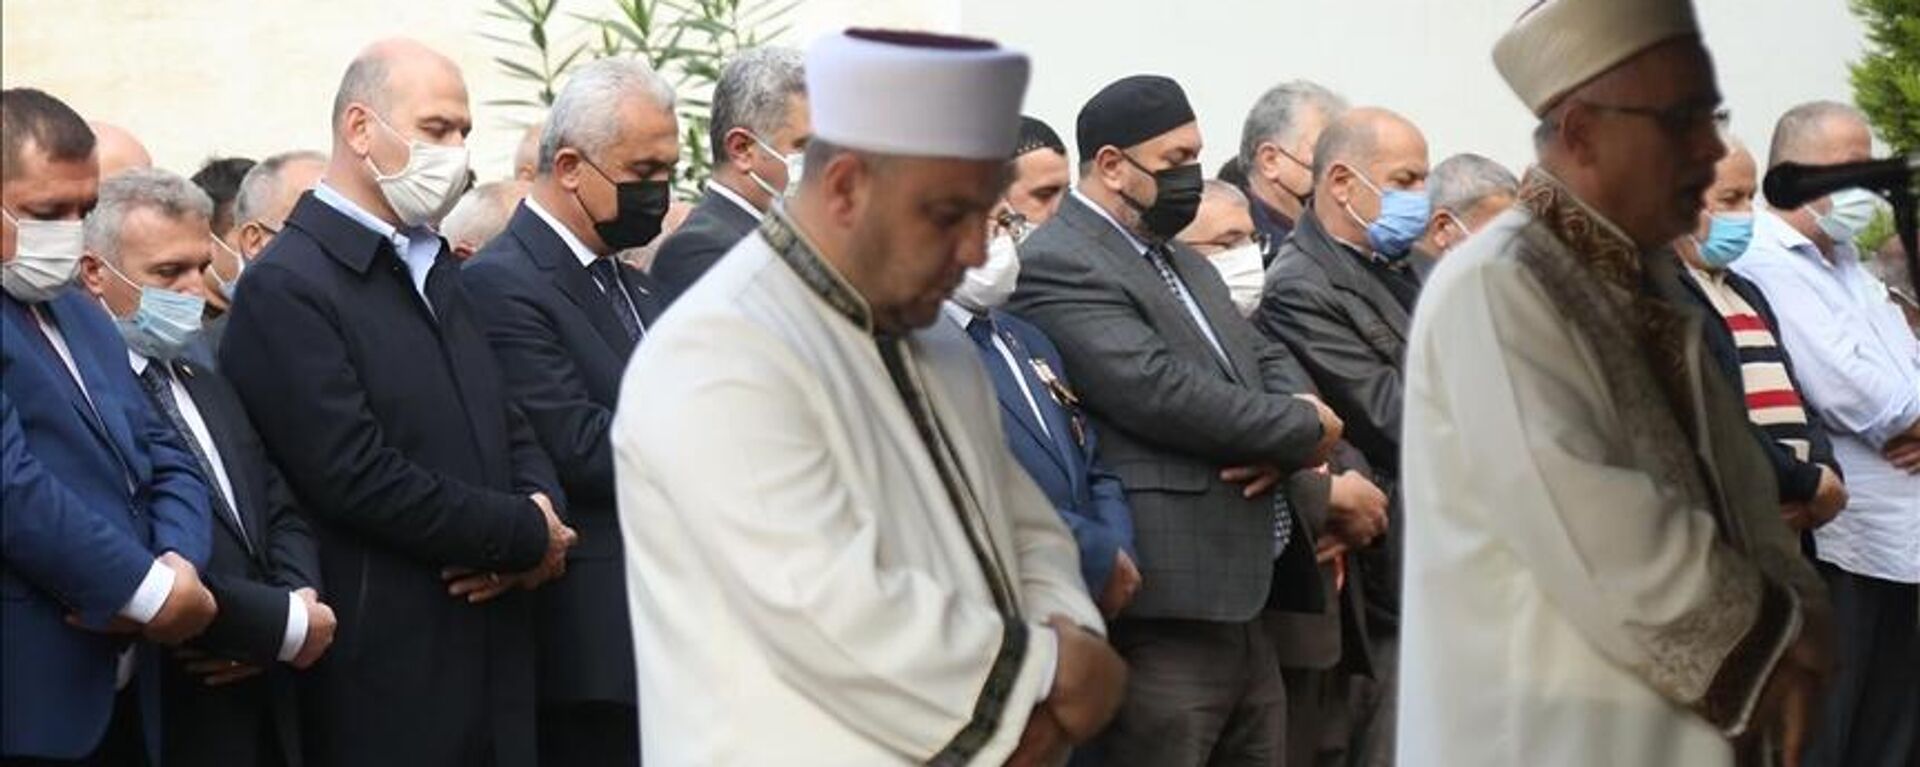 İçişleri Bakanı Soylu, Sinop'taki selde kaybolanların gıyabi cenaze namazına katıldı - Sputnik Türkiye, 1920, 03.11.2021